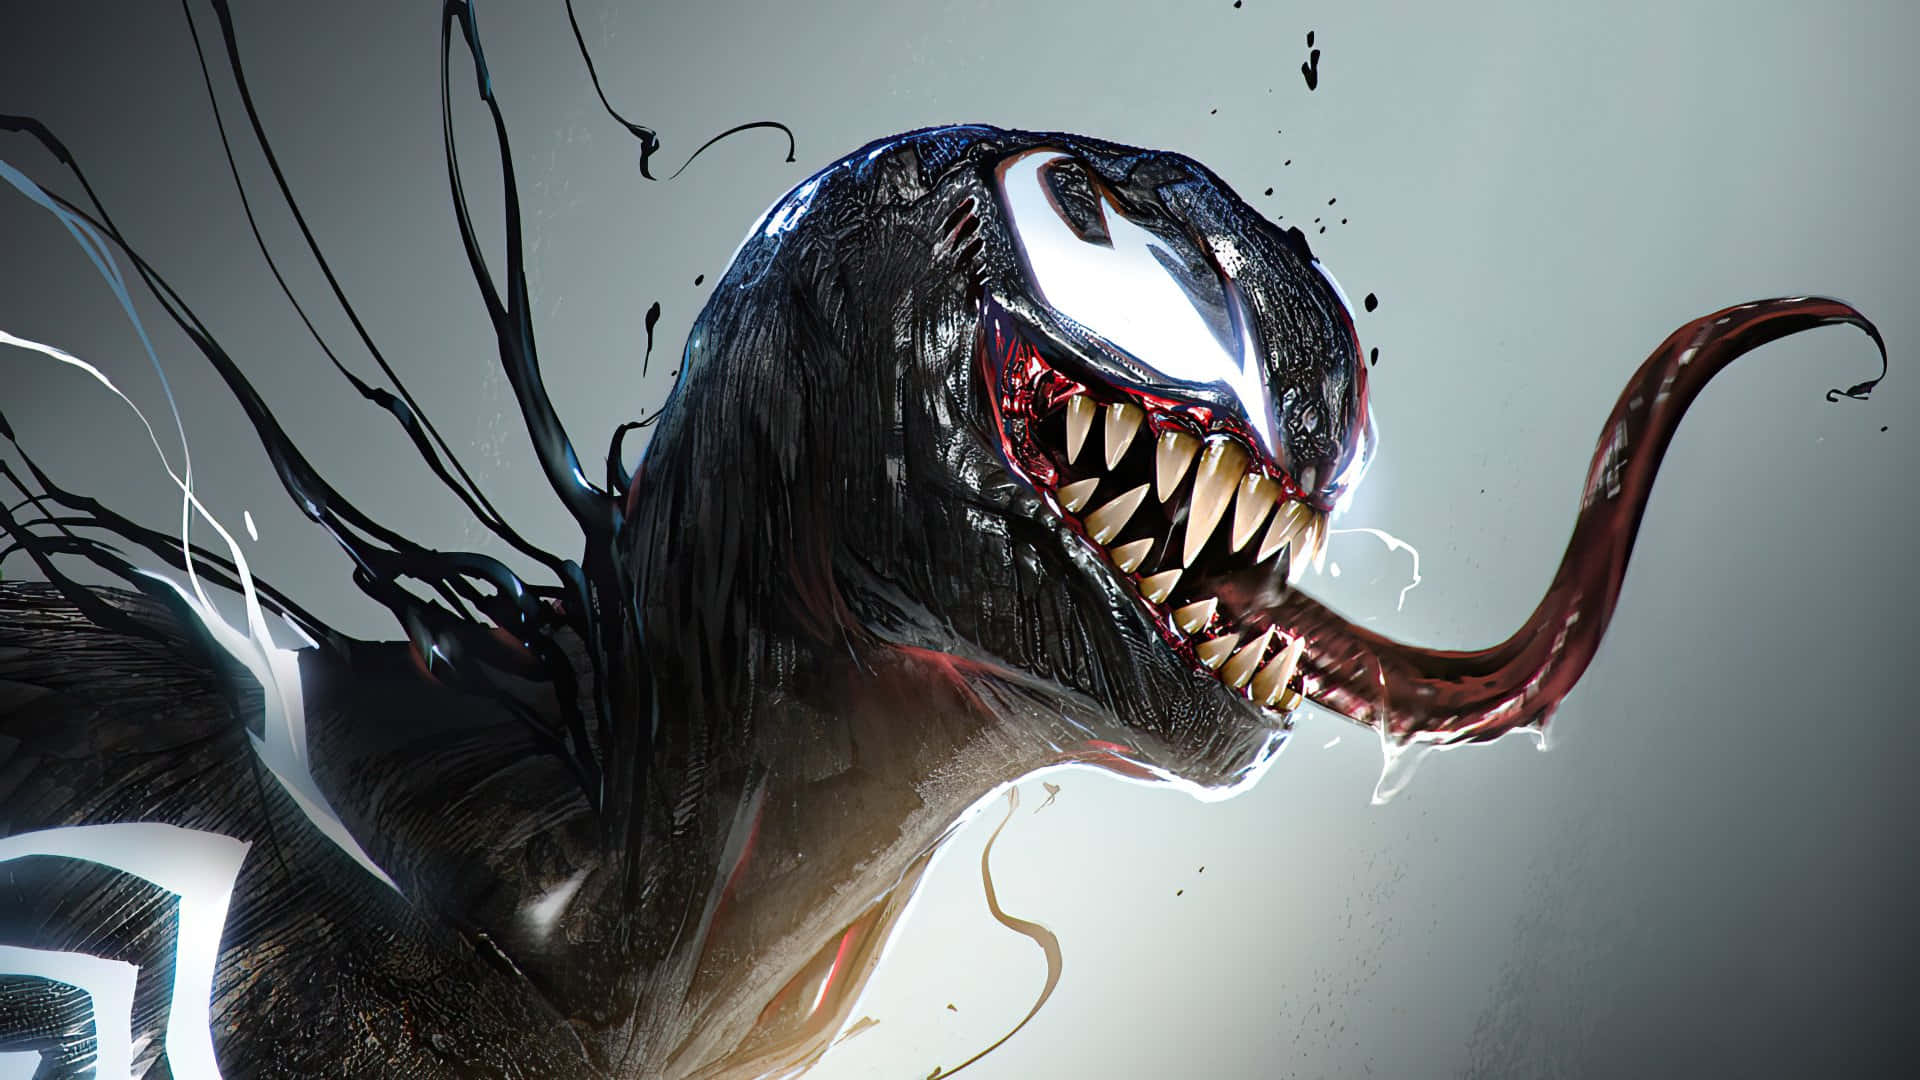 Marvelsikoniska Karaktär, Venom, Med En Hotfull Blick.